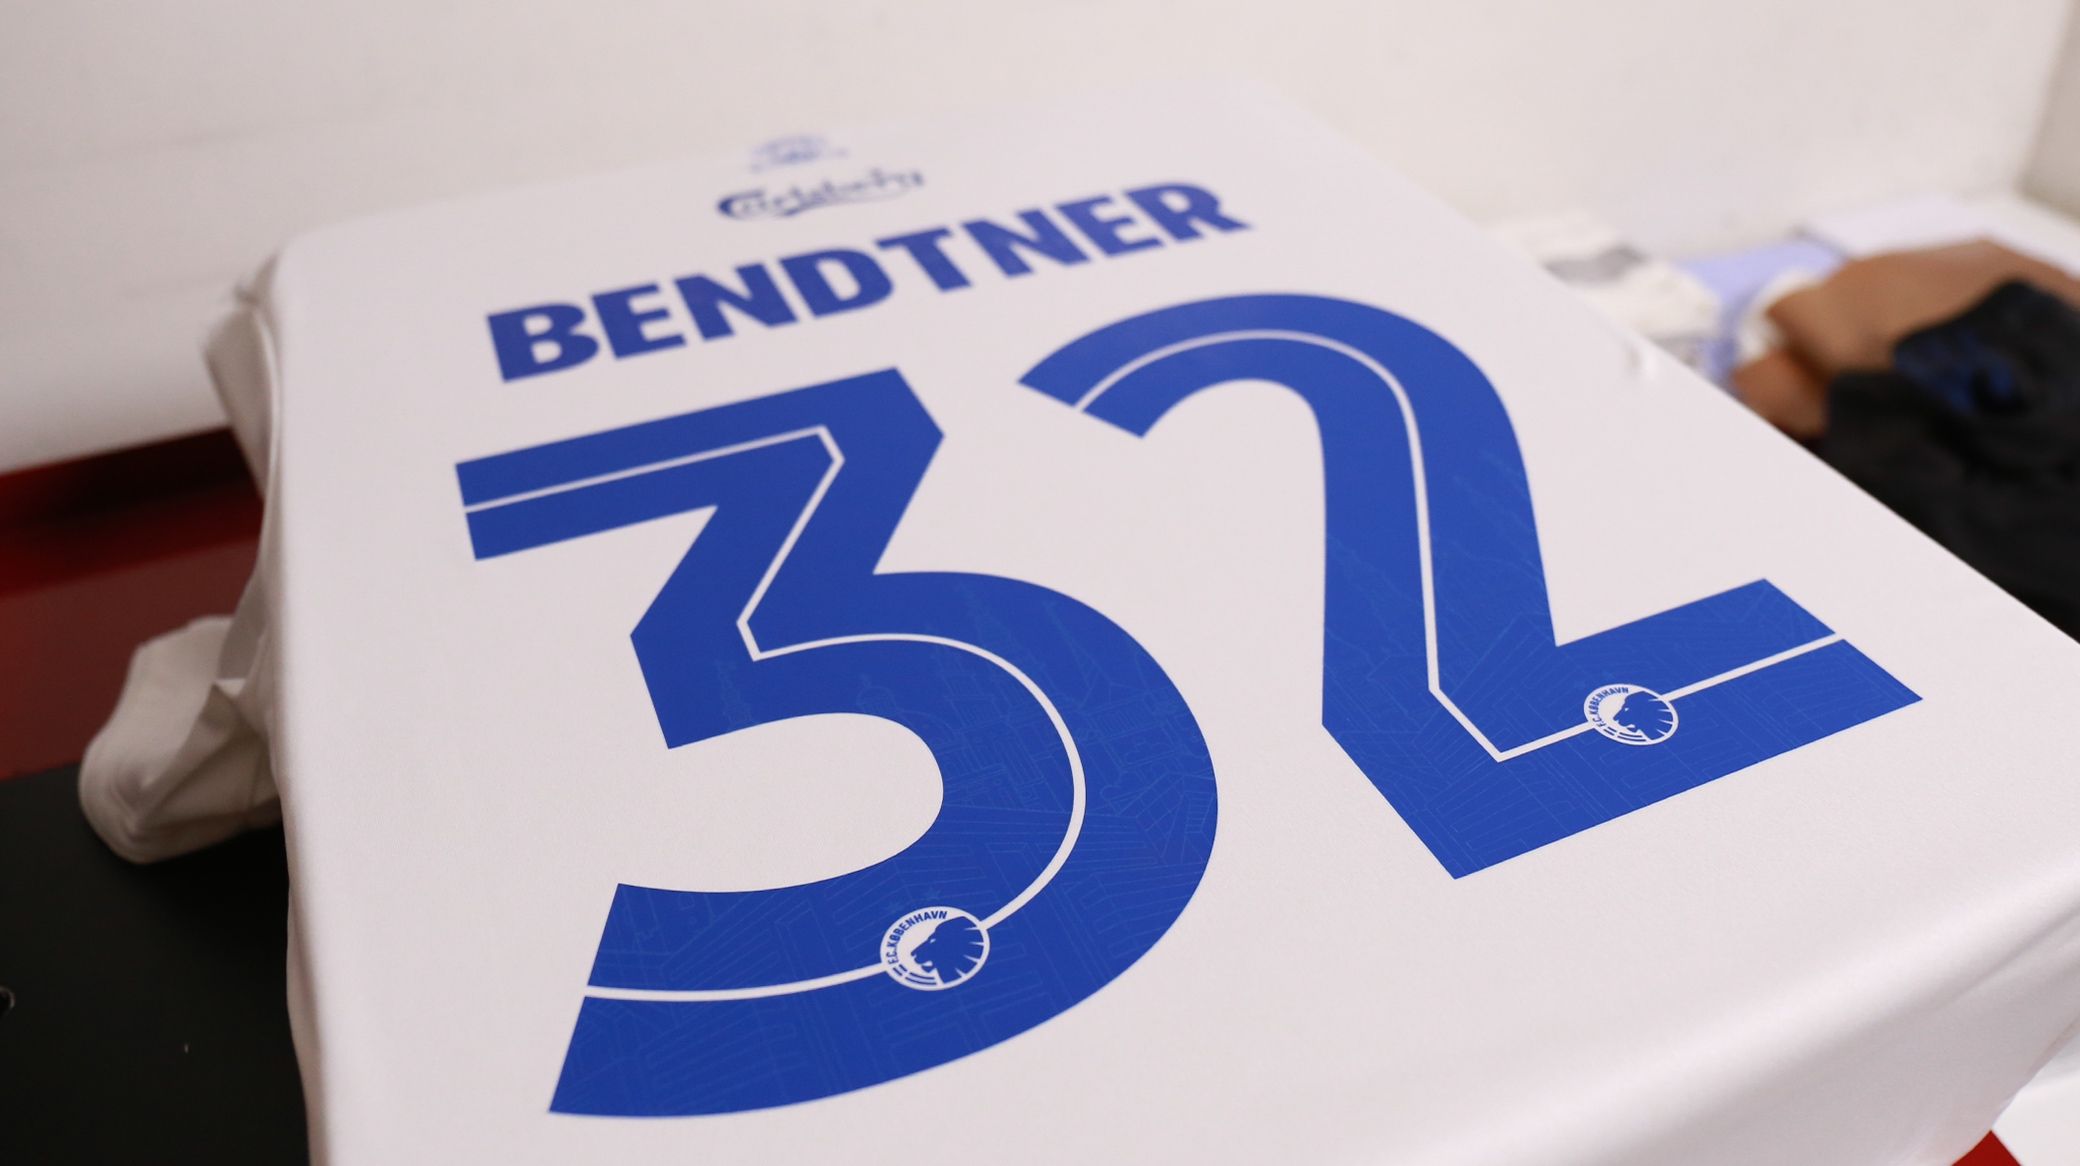 møl klik animation Derfor blev det nummer 32 til Bendtner | F.C. København